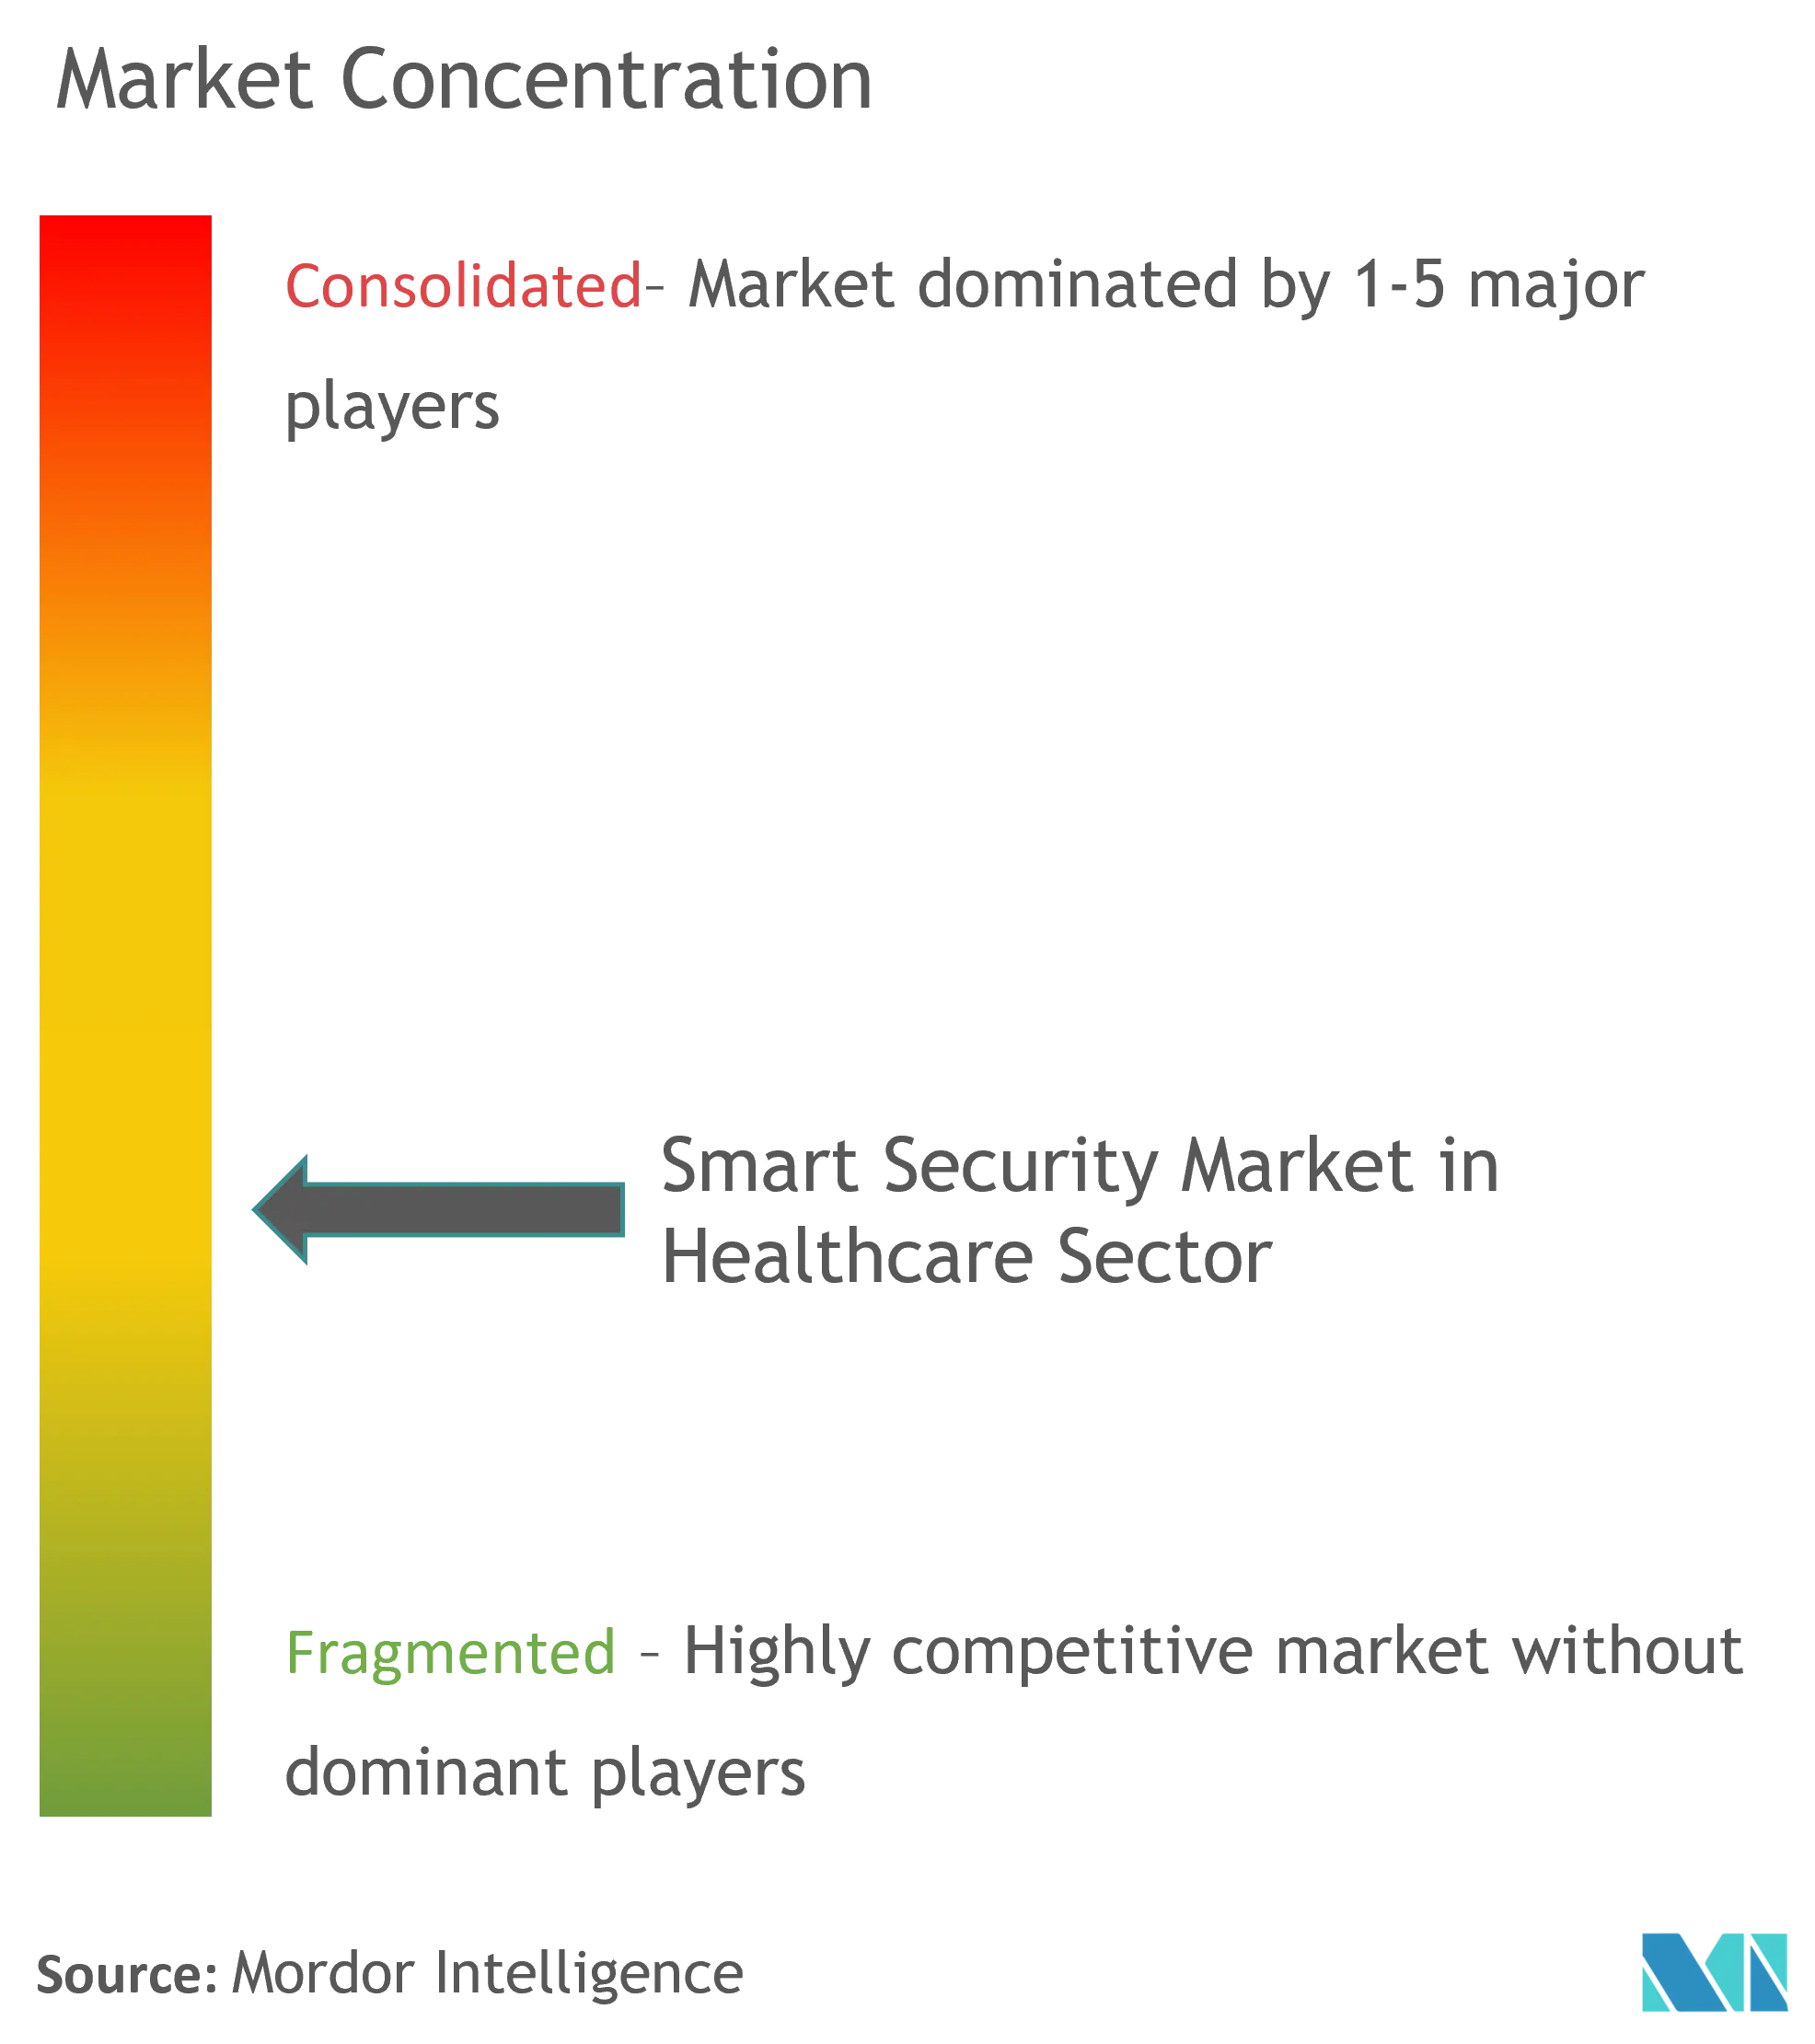 Thị trường bảo mật thông minh trong lĩnh vực chăm sóc sức khỏe